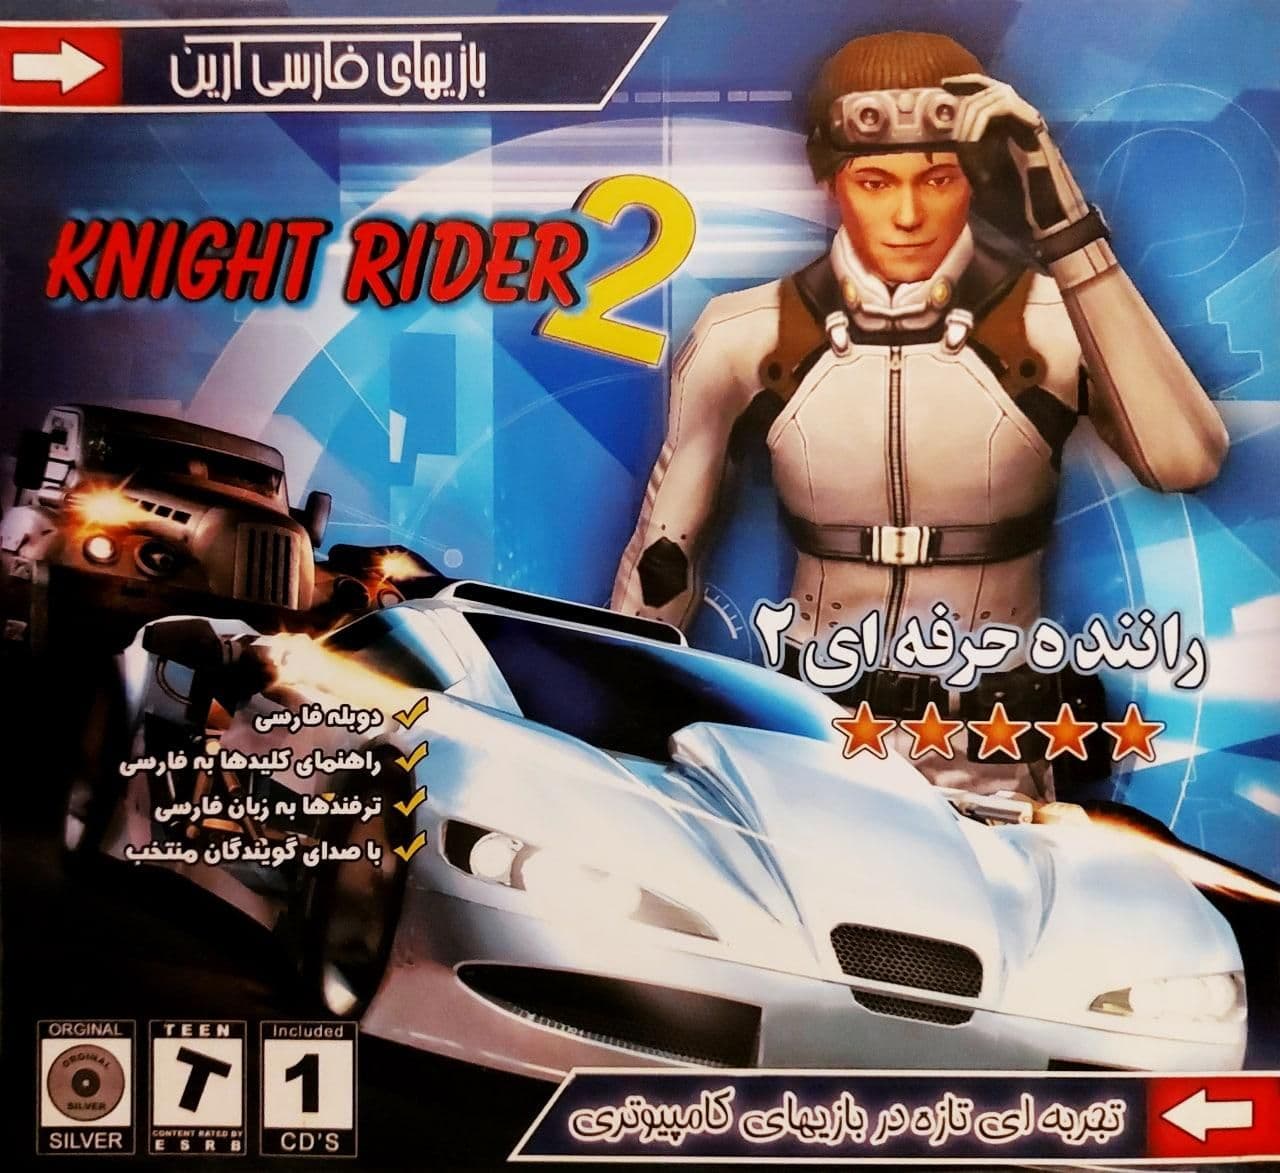 You are currently viewing دانلود بازی “راننده حرفه ای ۲” دوبله فارسی Knight rider 2 برای PC